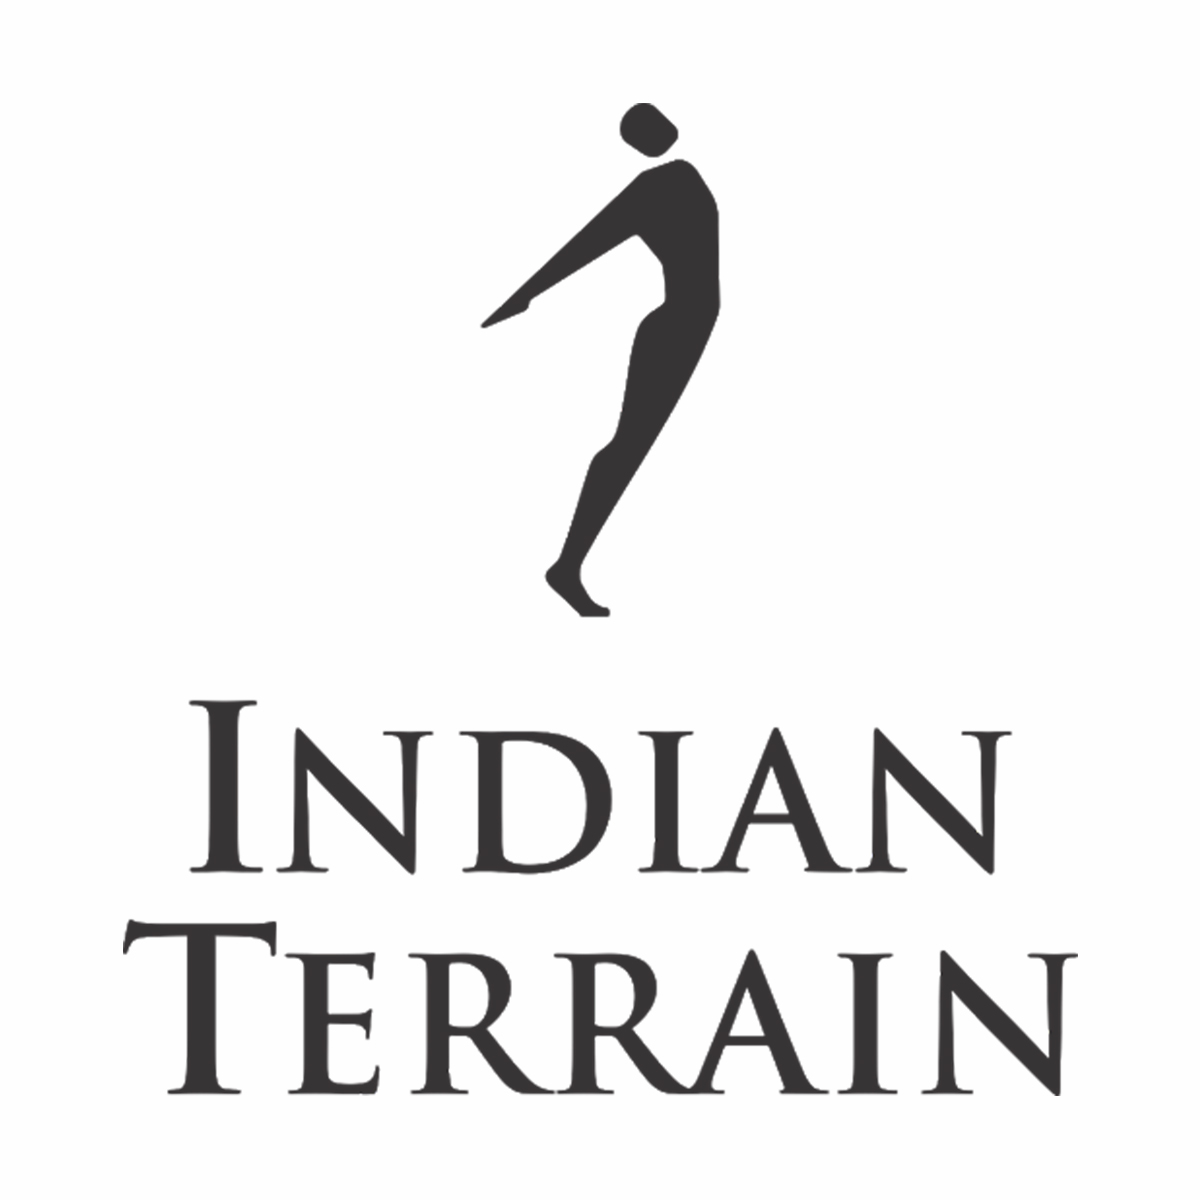 INDIAN TERRAIN, Next Galleria Malls